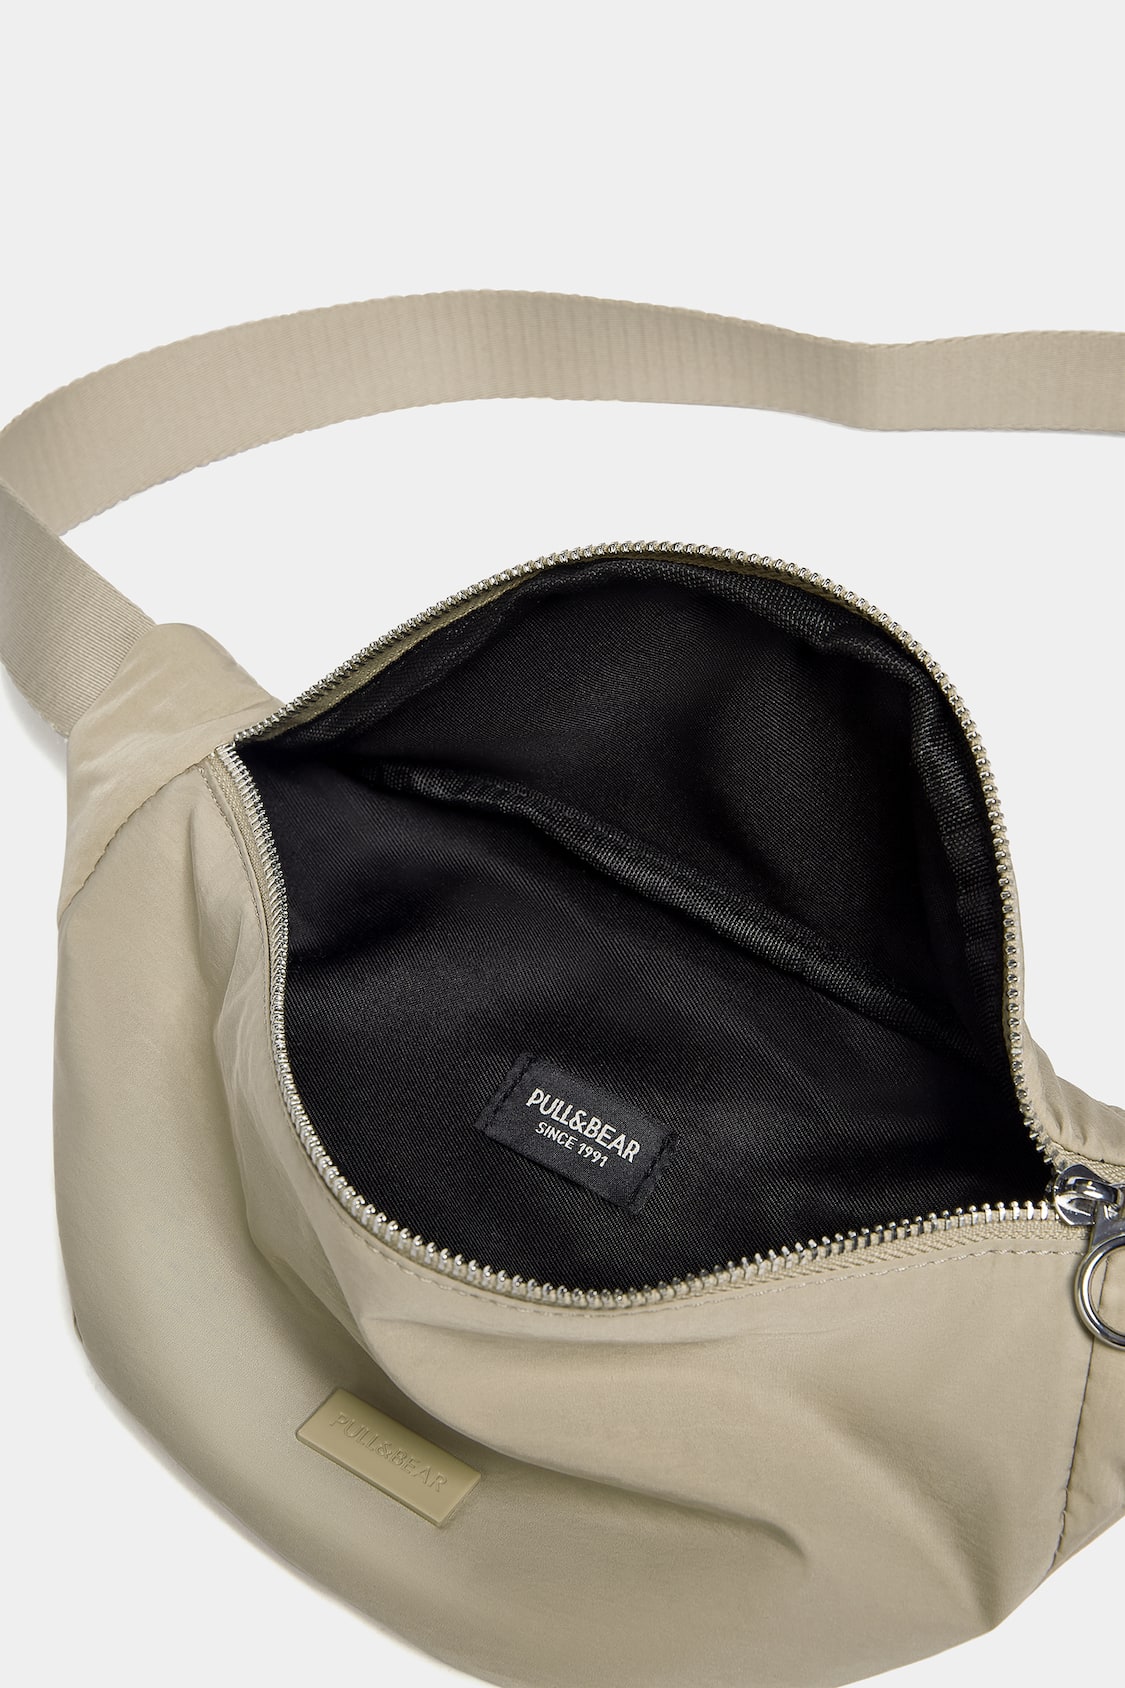 Béis The Pack Nylon Belt Bag in Black